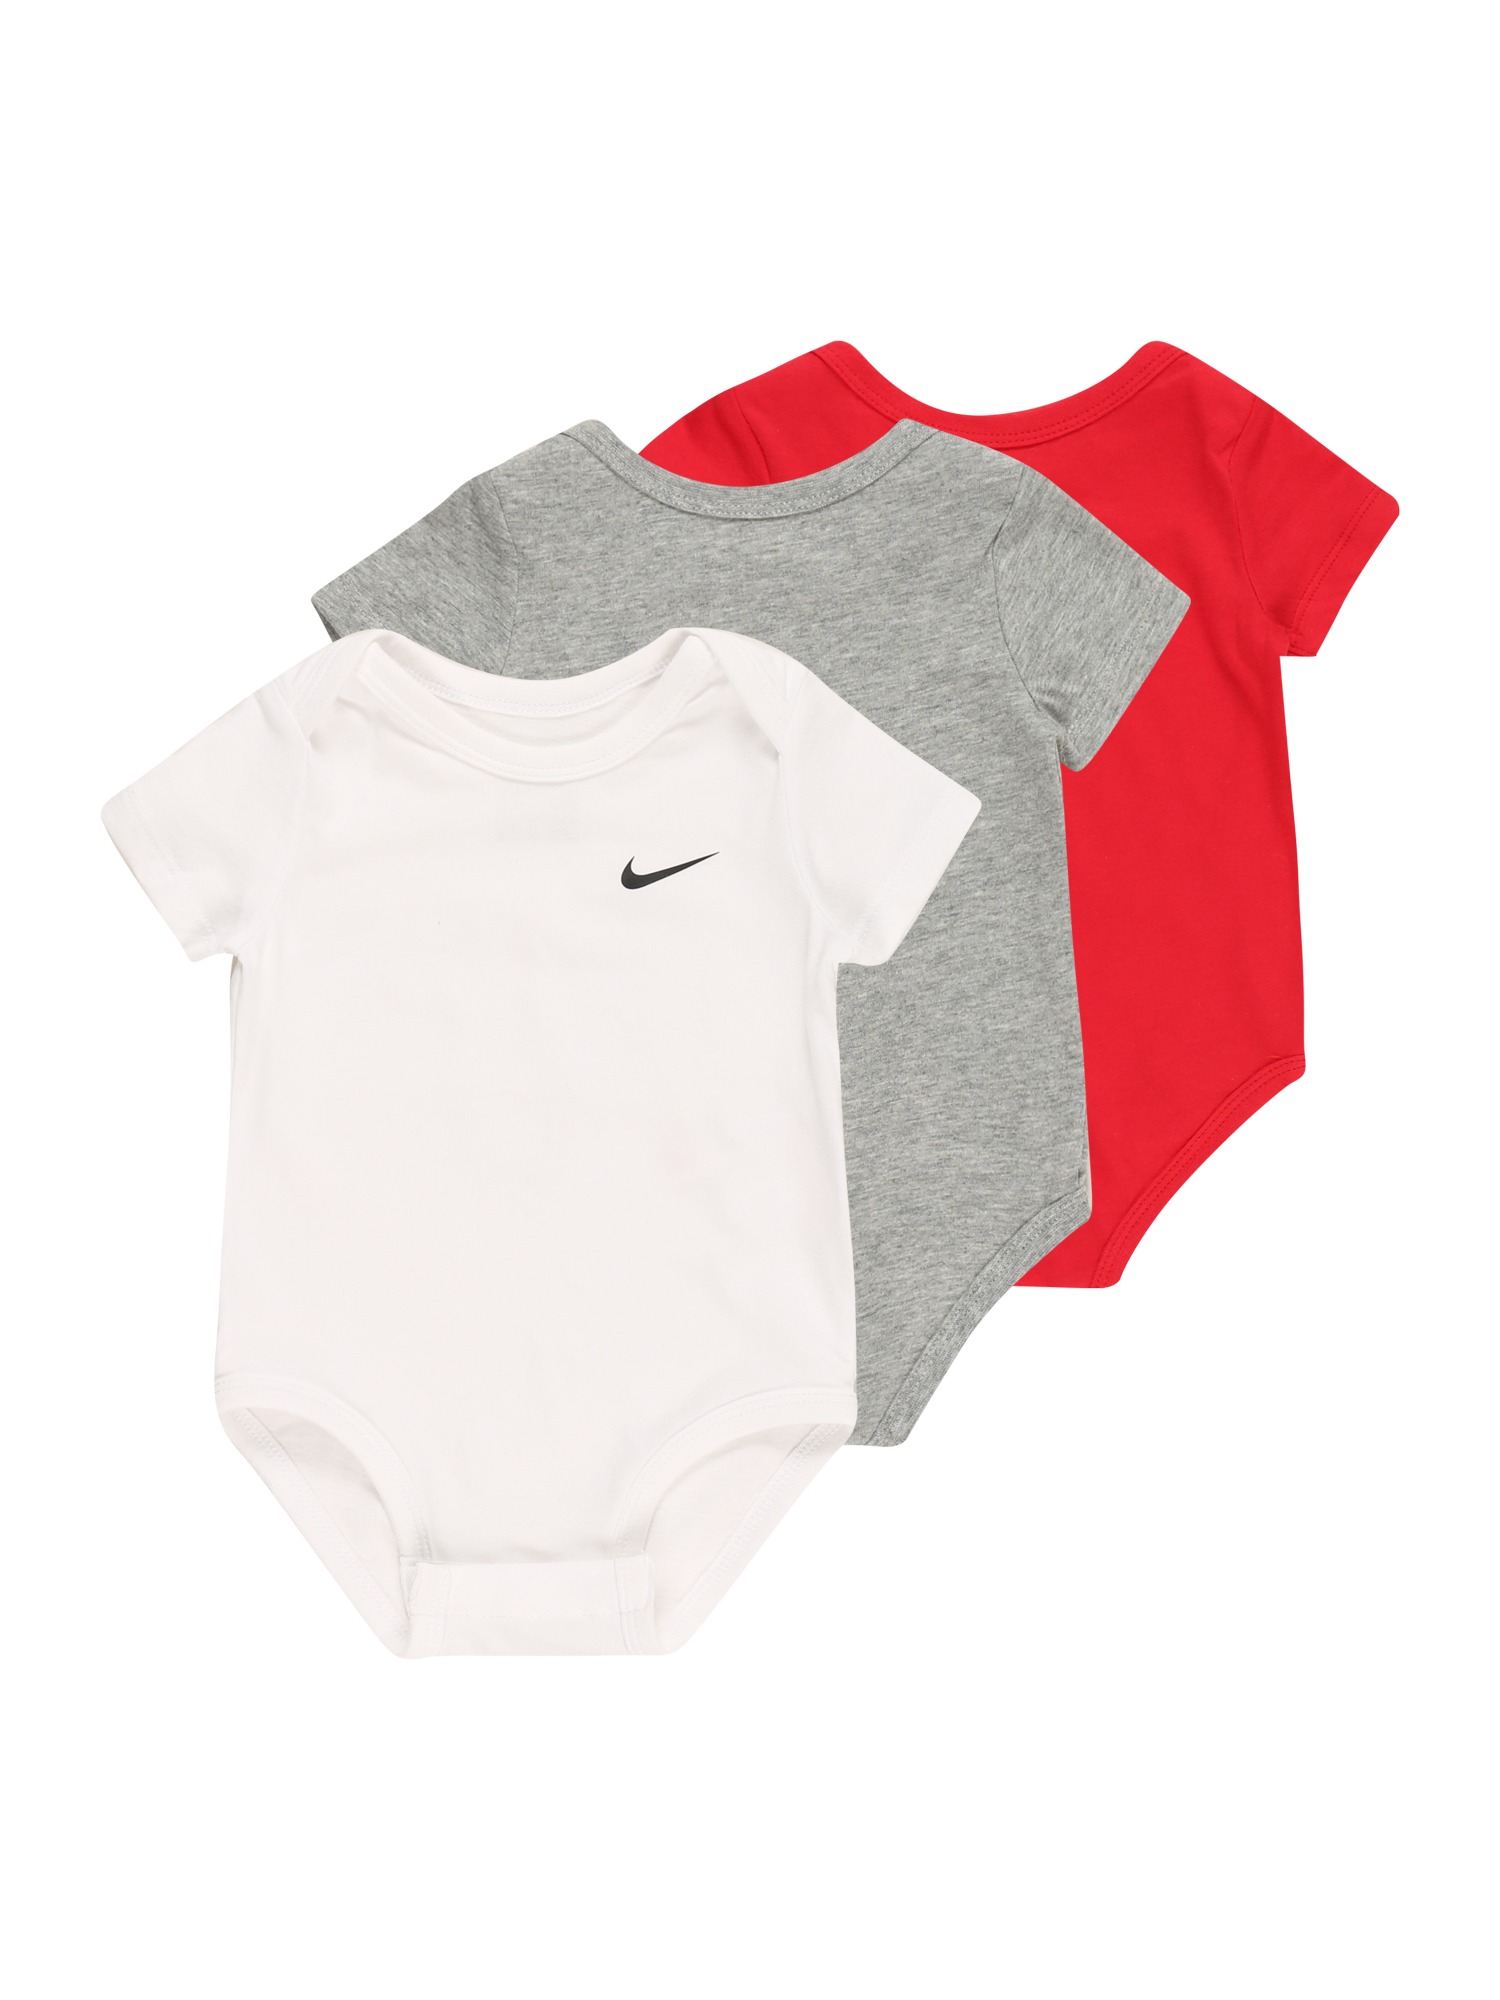 Nike Sportswear Śpiochy/body w kolorze Czerwony, Biały, Nakrapiany Szarym 